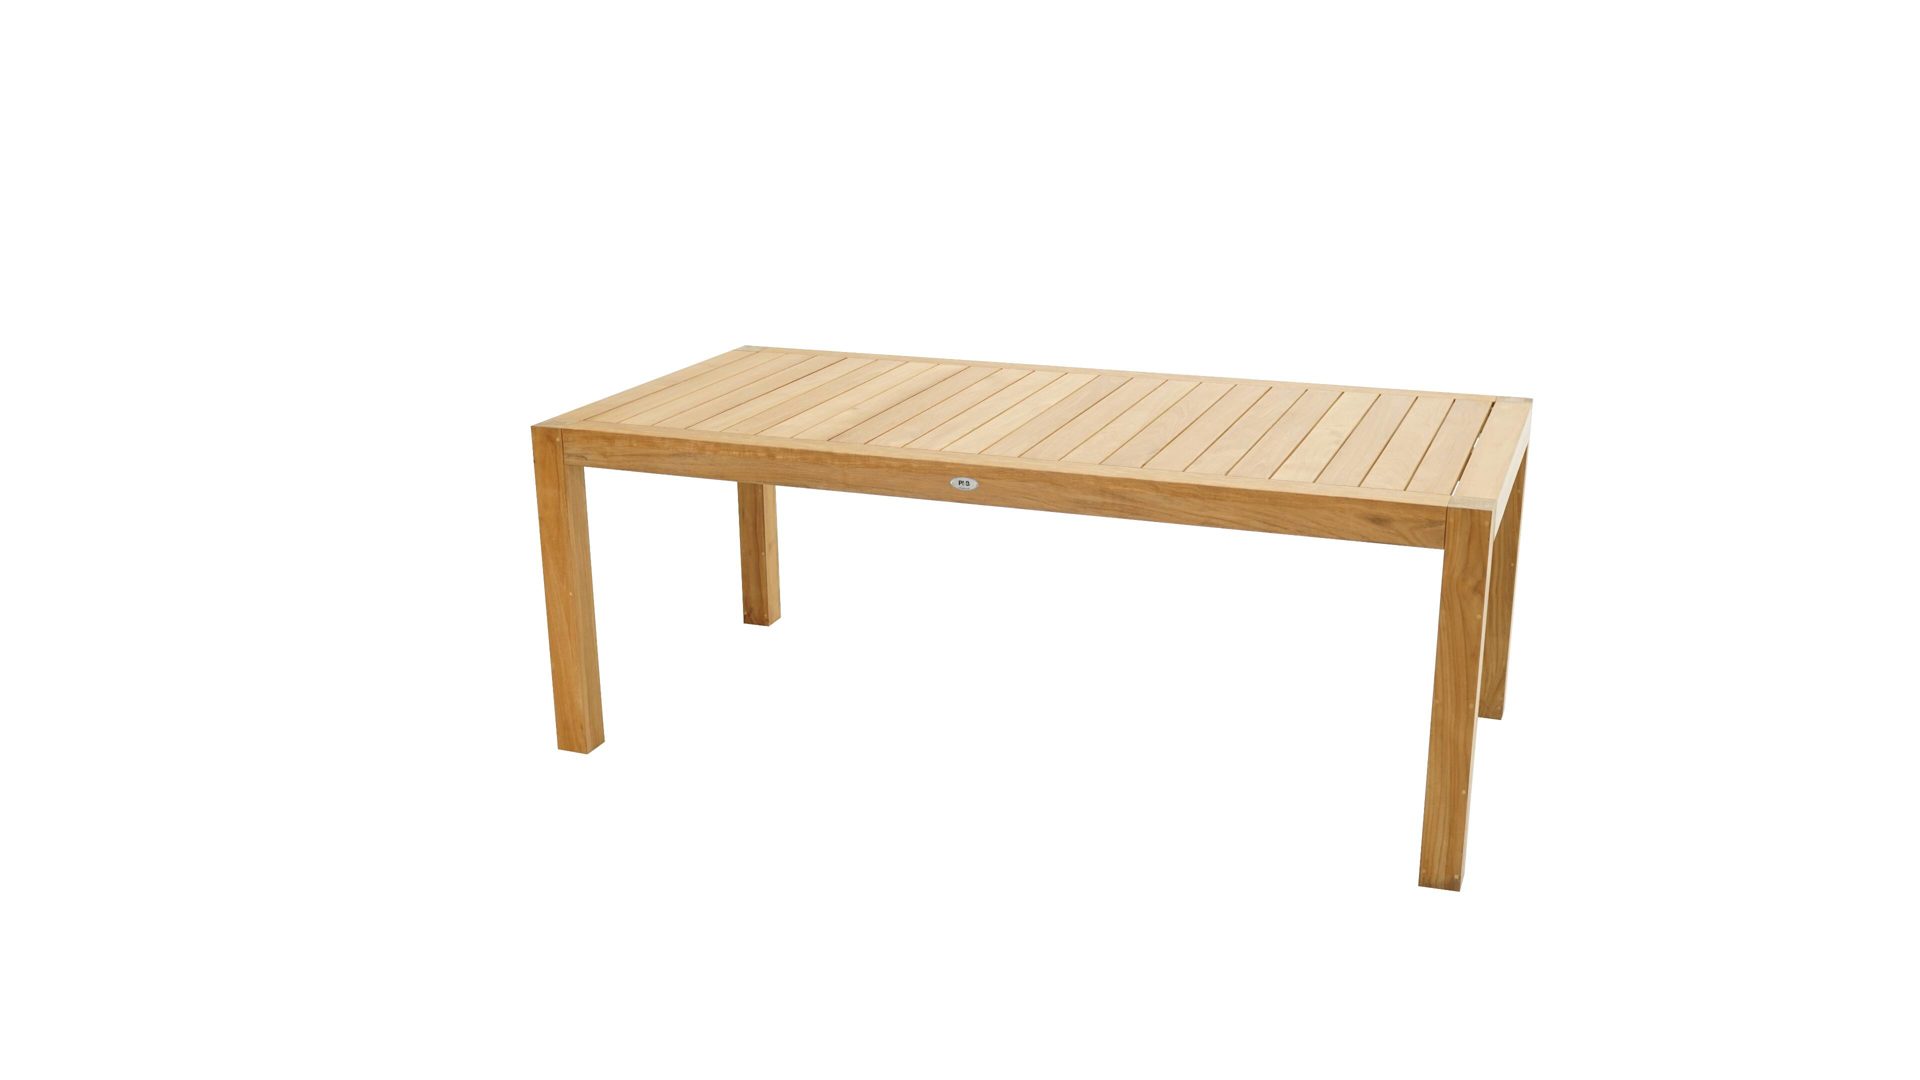 Gartentisch Ploß aus Holz in Holzfarben Ploß® Loft-Tisch New Haven als Gartenmöbel Teakholz – ca. 200 x 100 cm